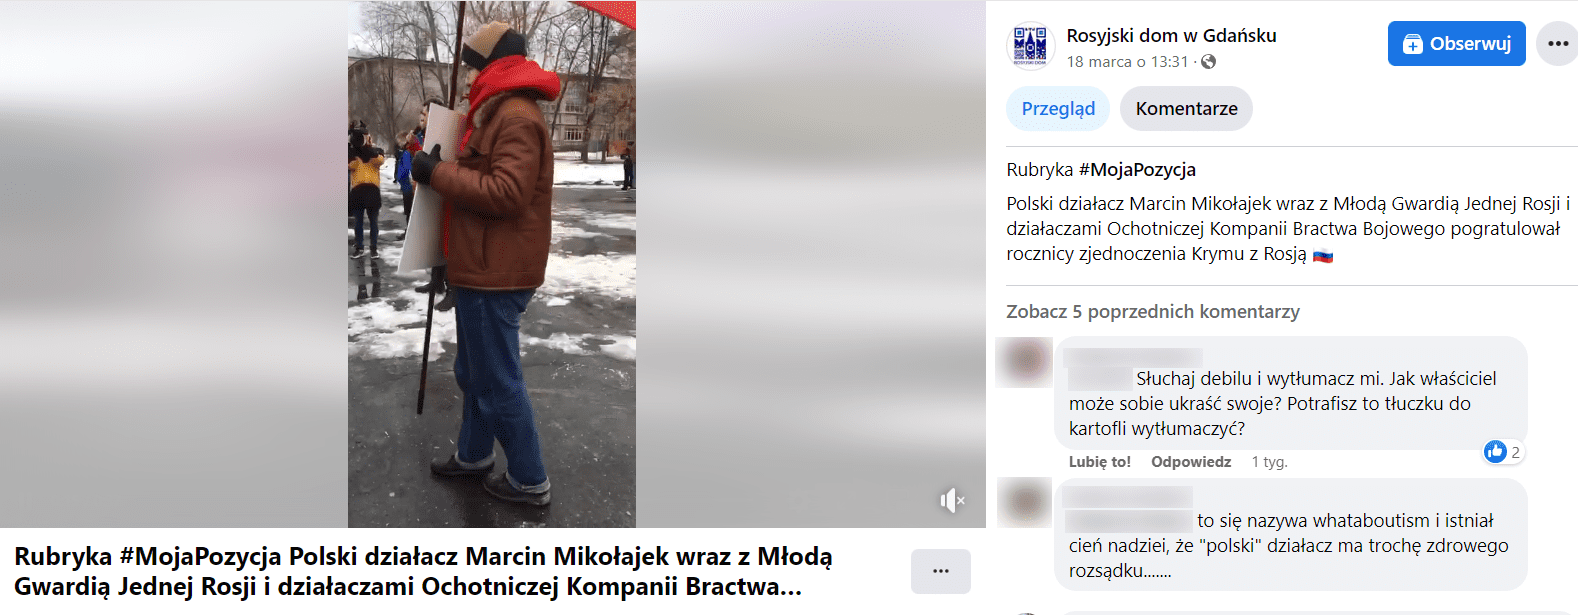 Zrzut ekranu wpisu na Facebooku, w którym pisano o rocznicy zjednoczenia Krymu z Rosją. Na screenie widać wypowiedzi kilku internautów oraz dołączone nagranie z małej manifestacji na ulicy.